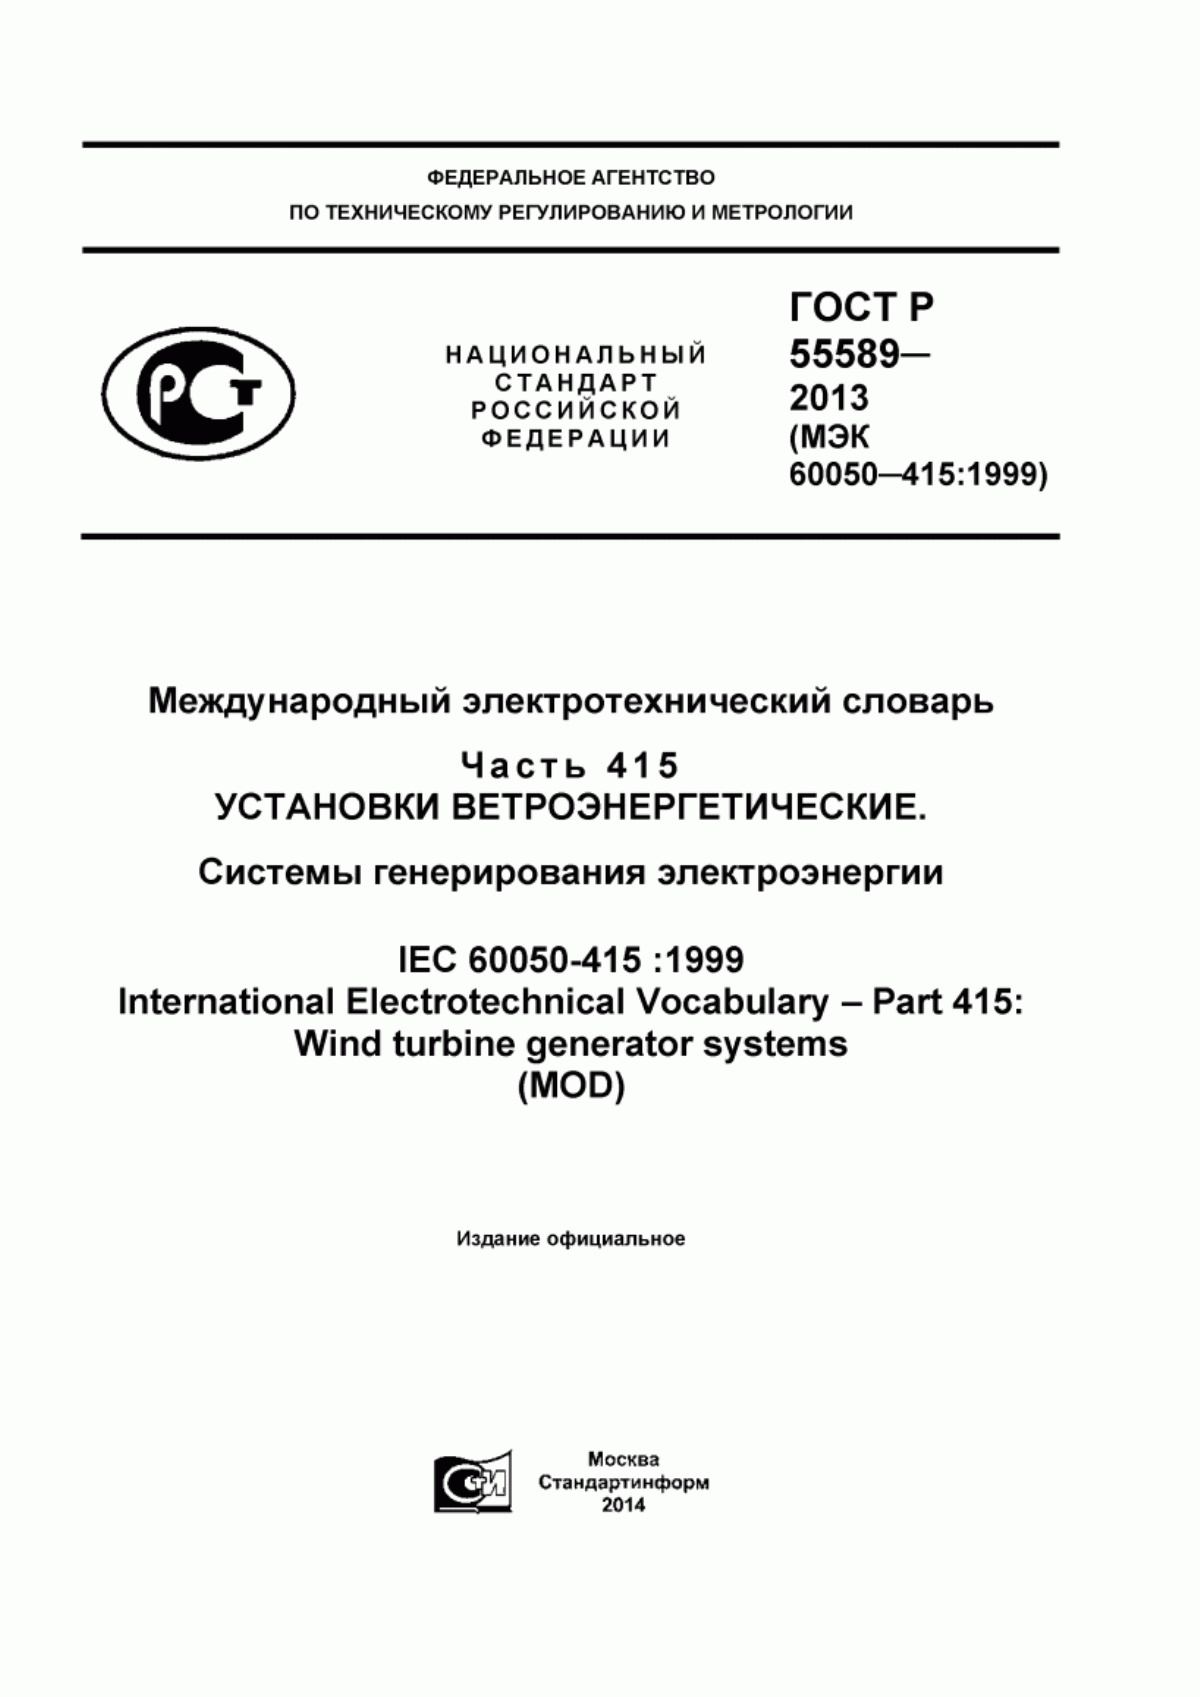 ГОСТ Р 55589-2013 Международный электротехнический словарь. Часть 415. Установки ветроэнергетические. Системы генерирования электроэнергии